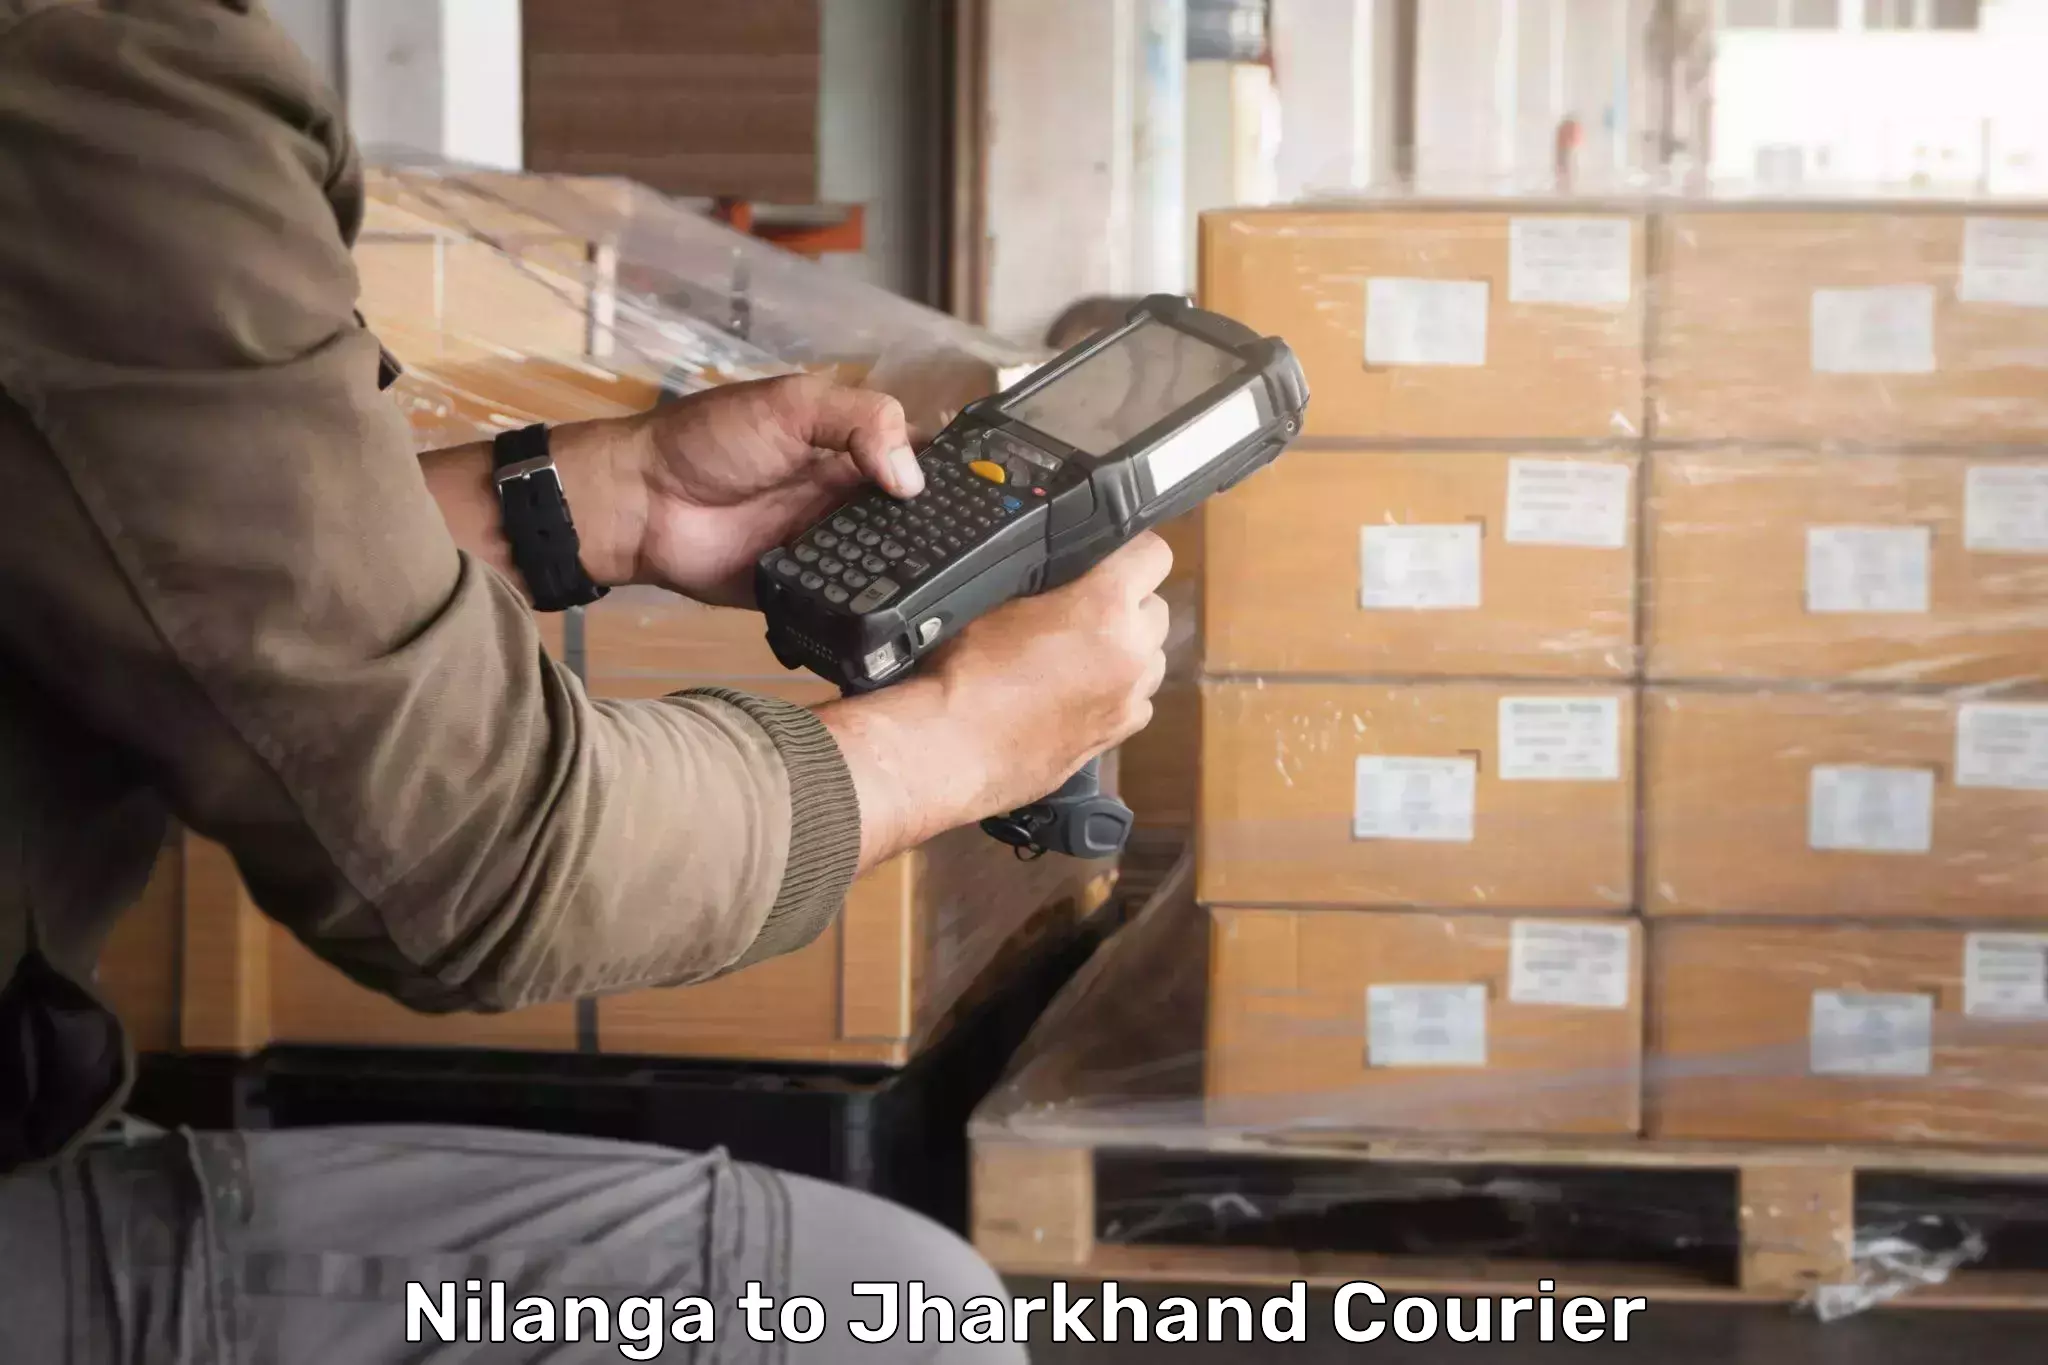 Multi-city courier Nilanga to West Singhbhum